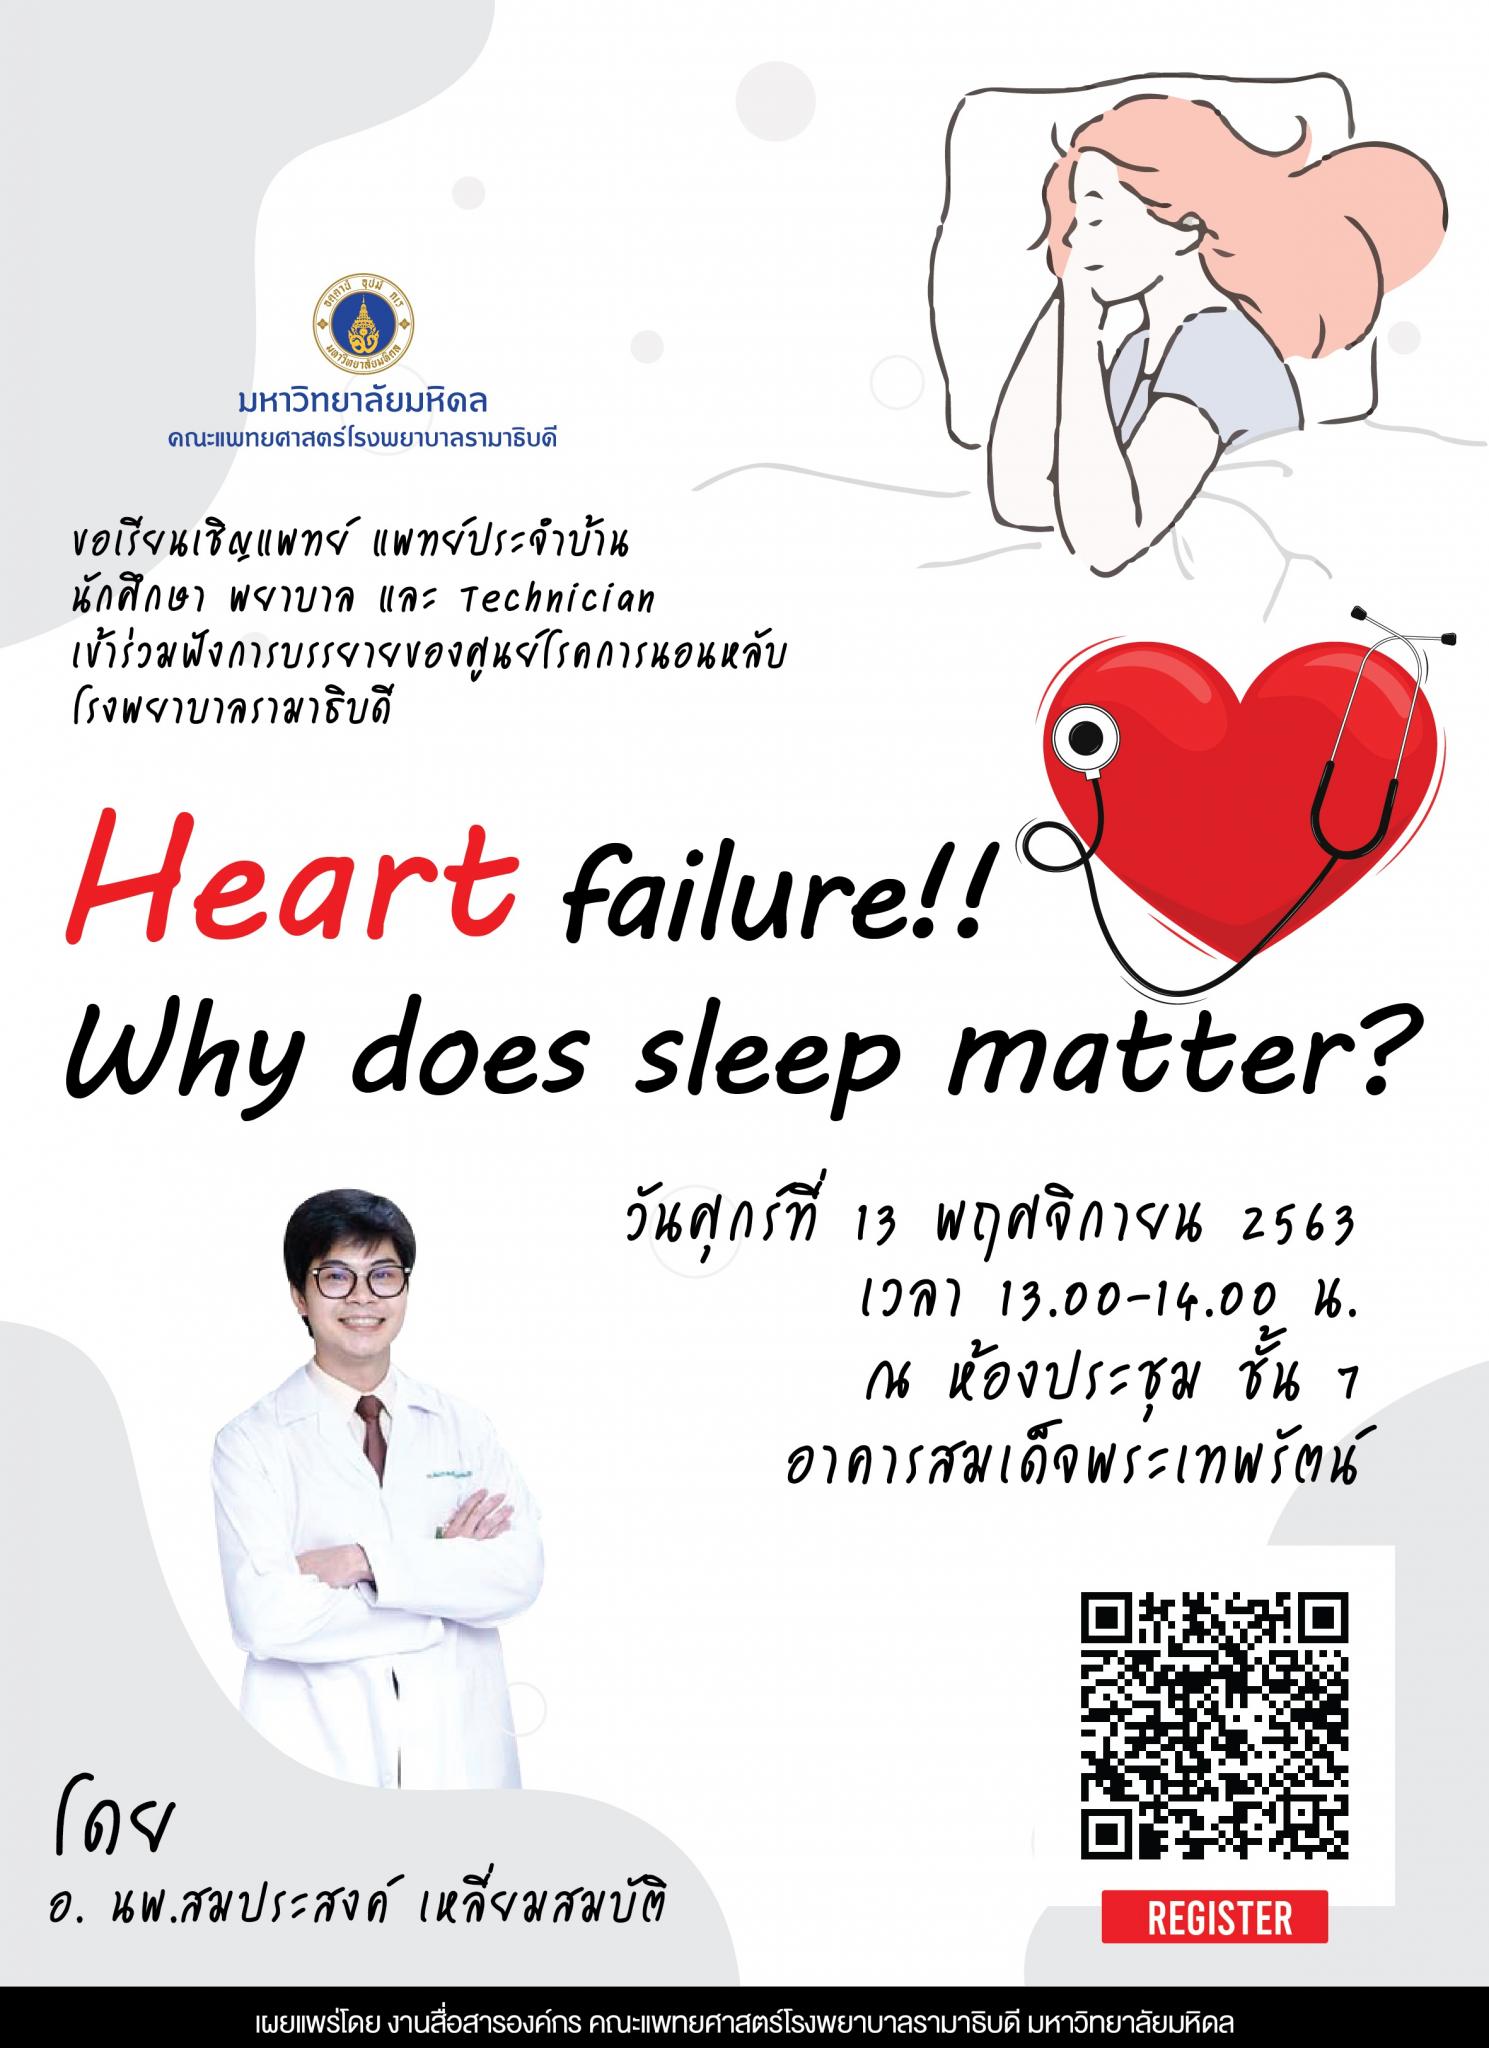 ขอเชิญร่วมฟังการบรรยาย Heart failure!! Why does sleep matter?